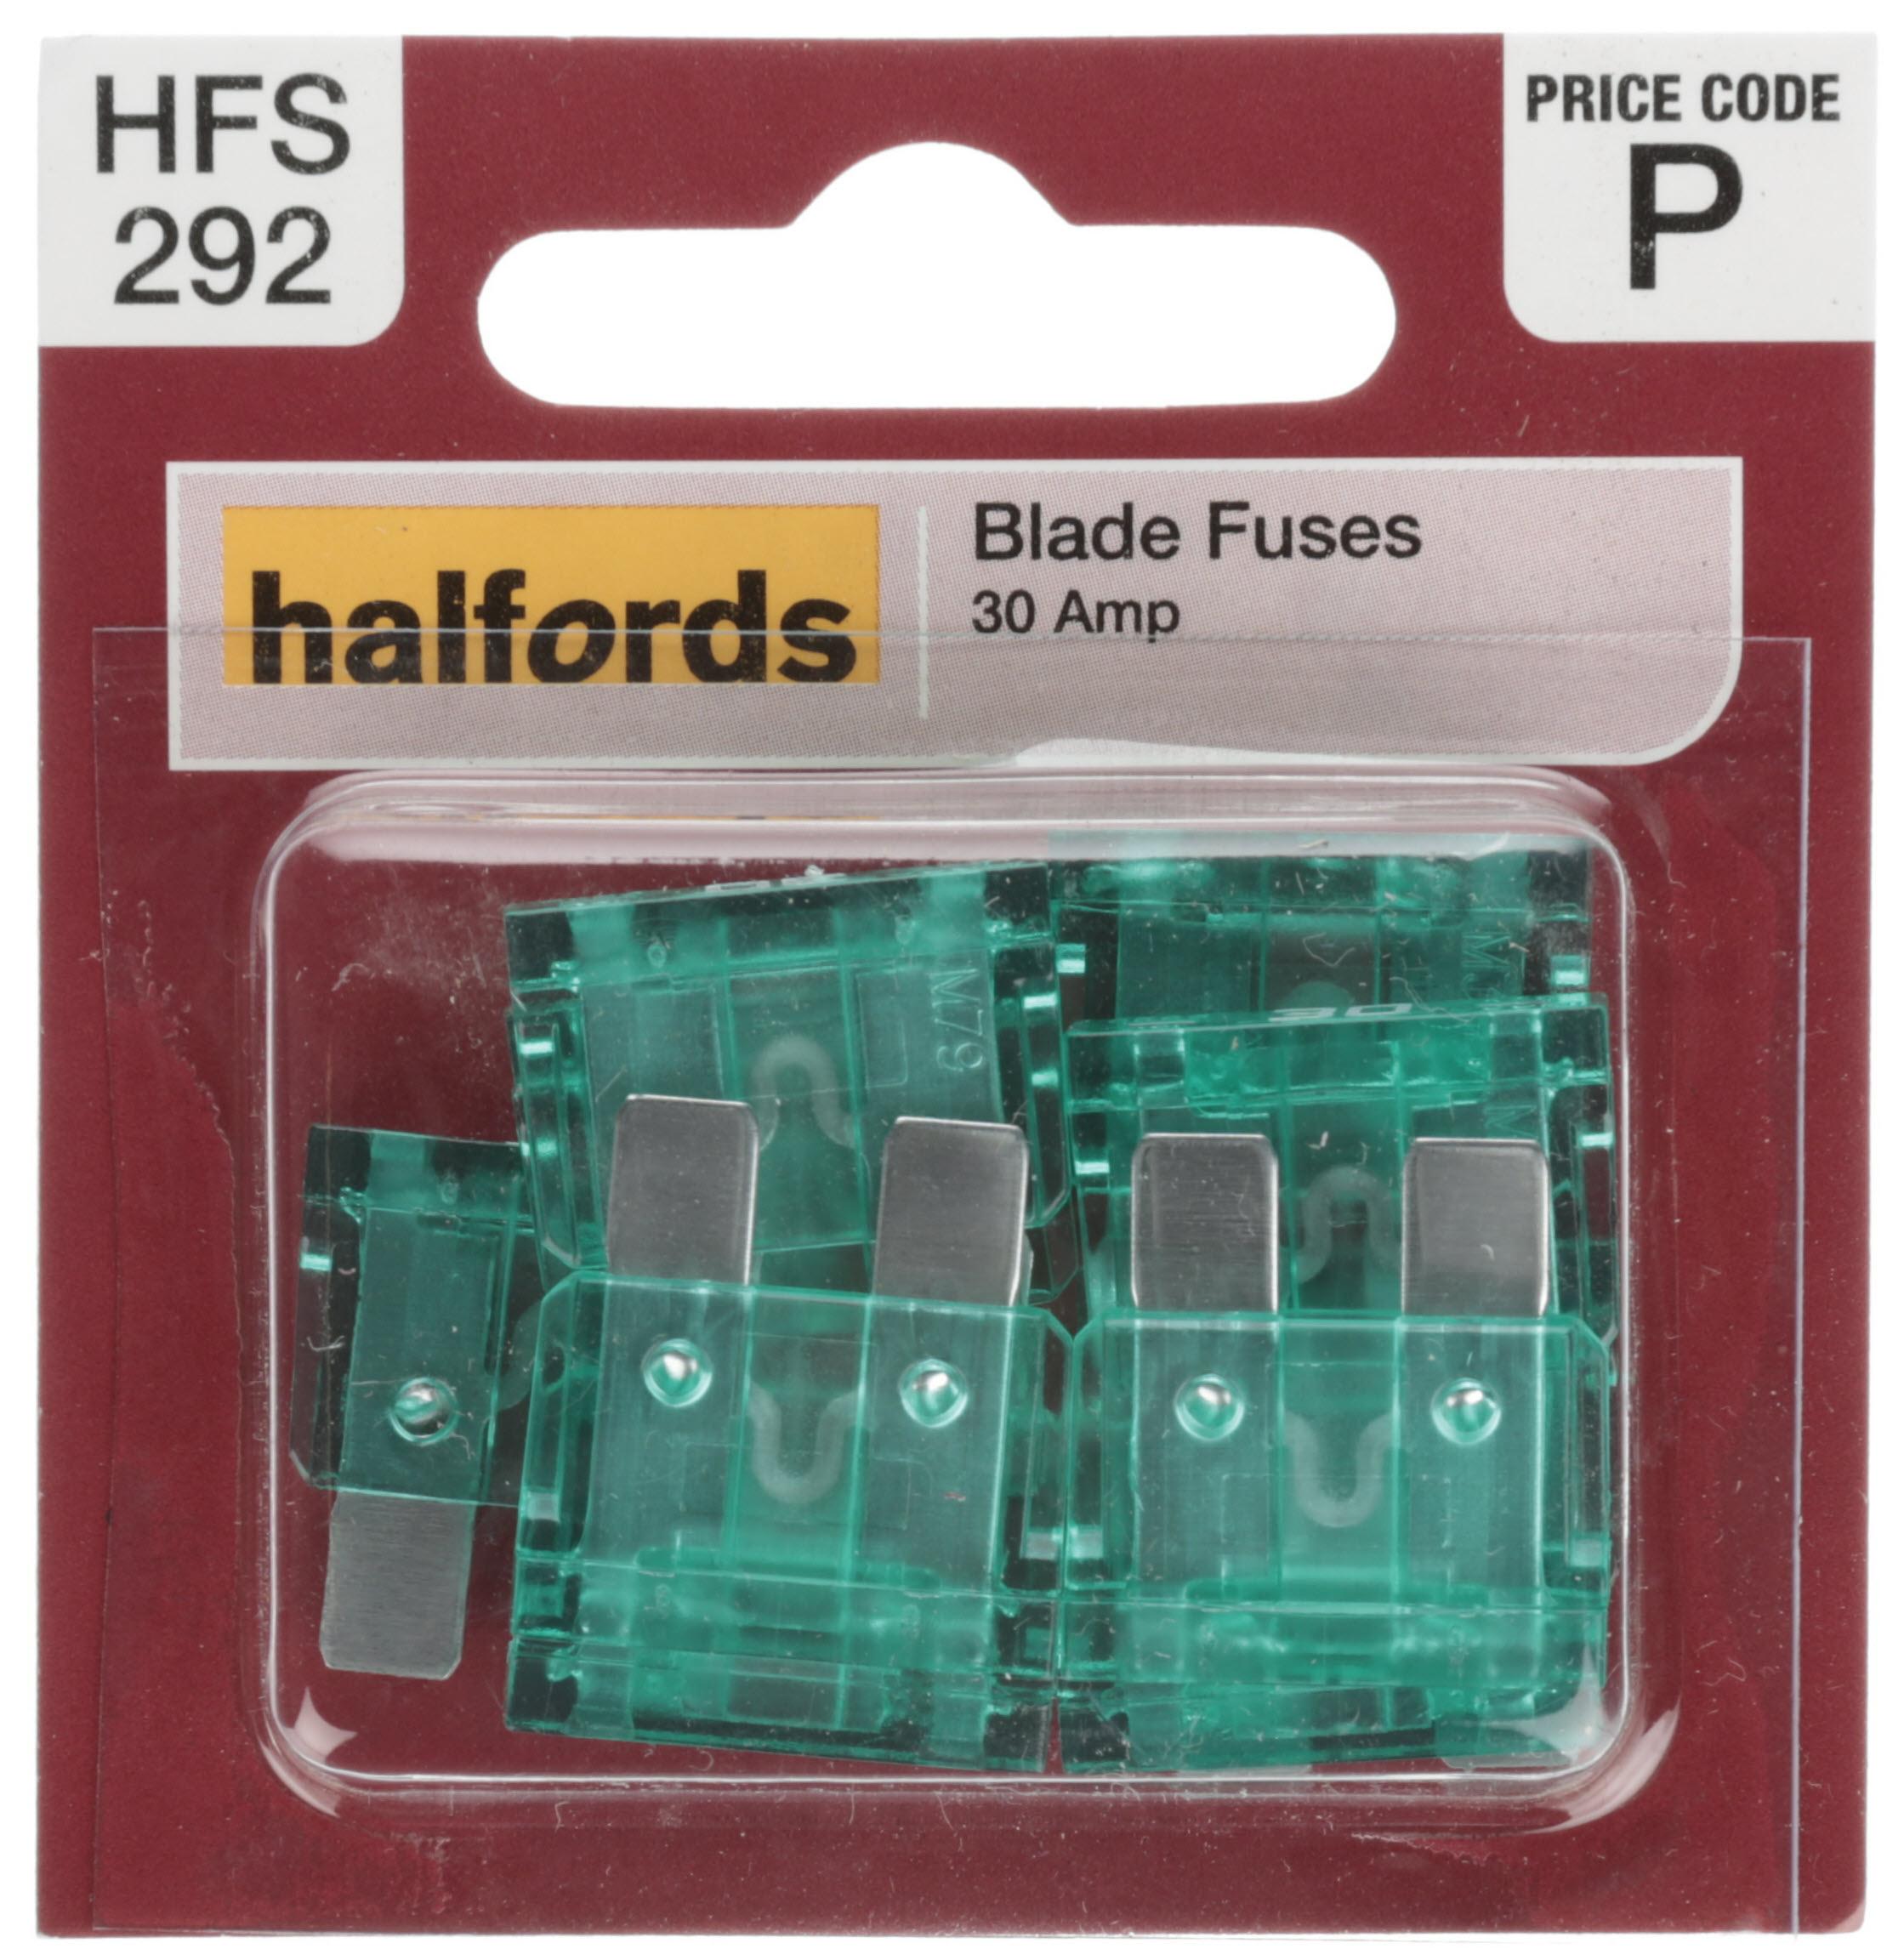 Halfords Blade Fuses 30 Amp (Hfs292)